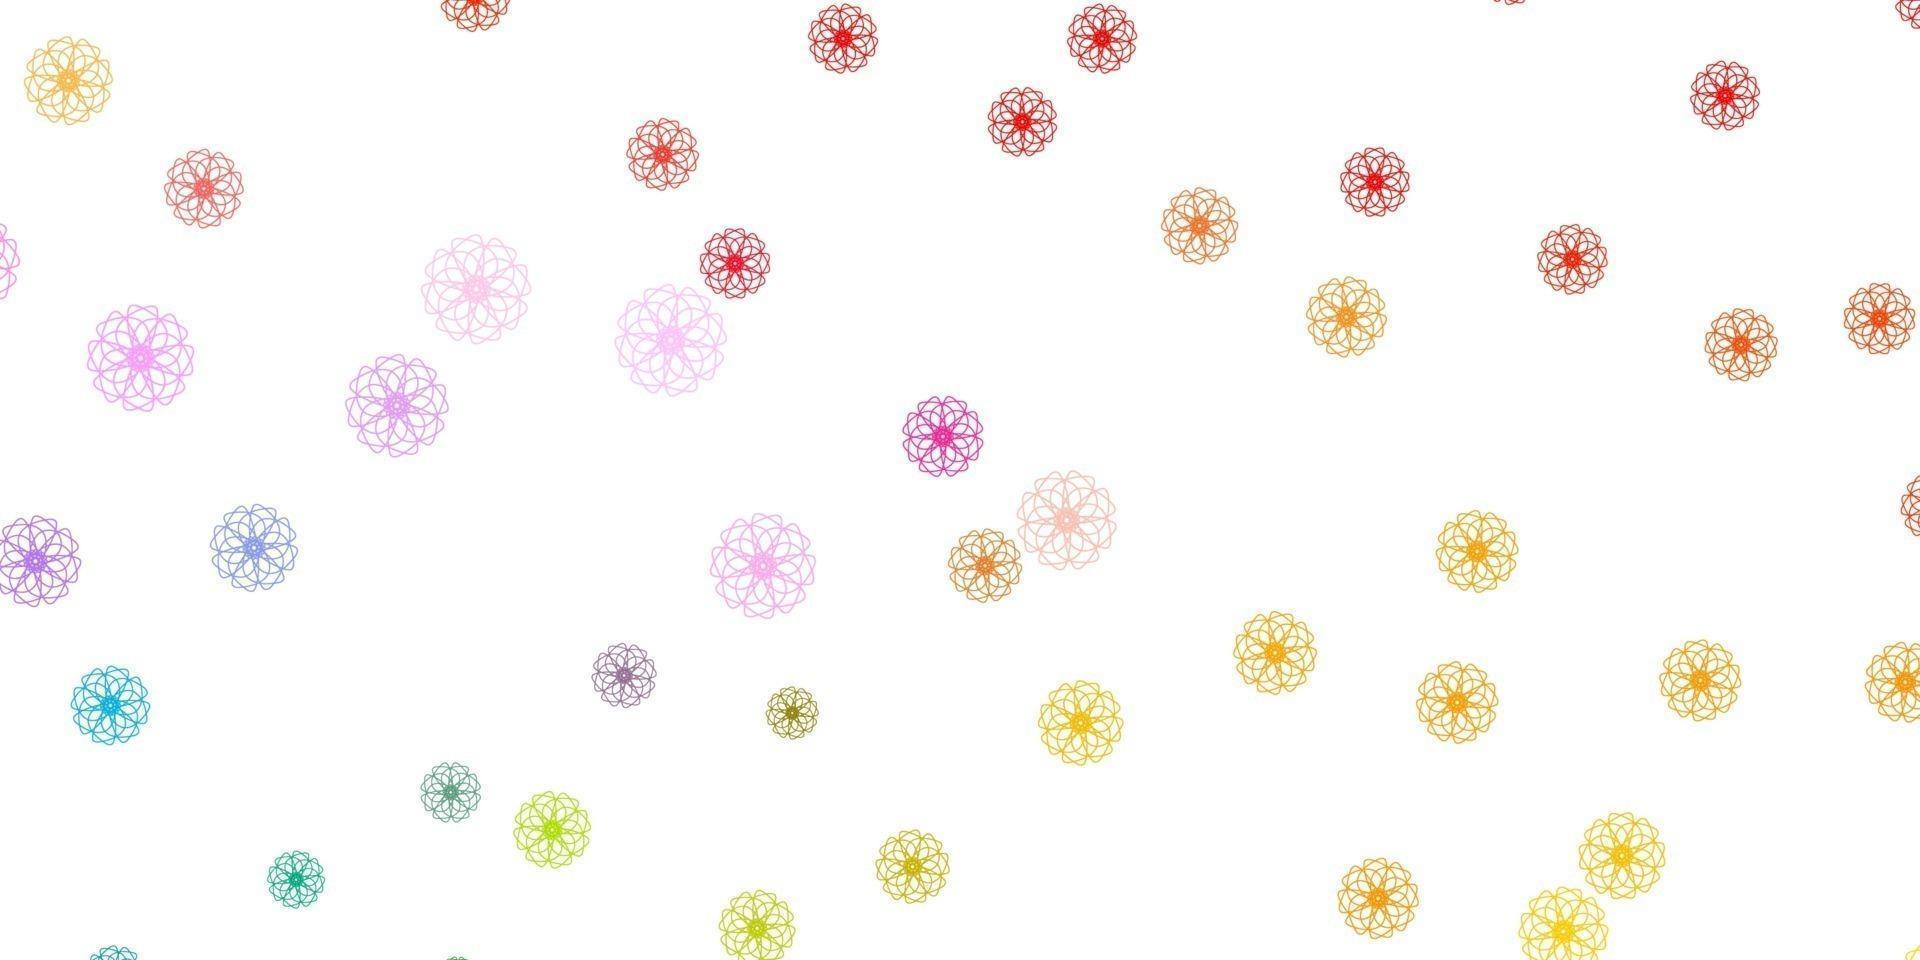 licht veelkleurige vector doodle achtergrond met bloemen.